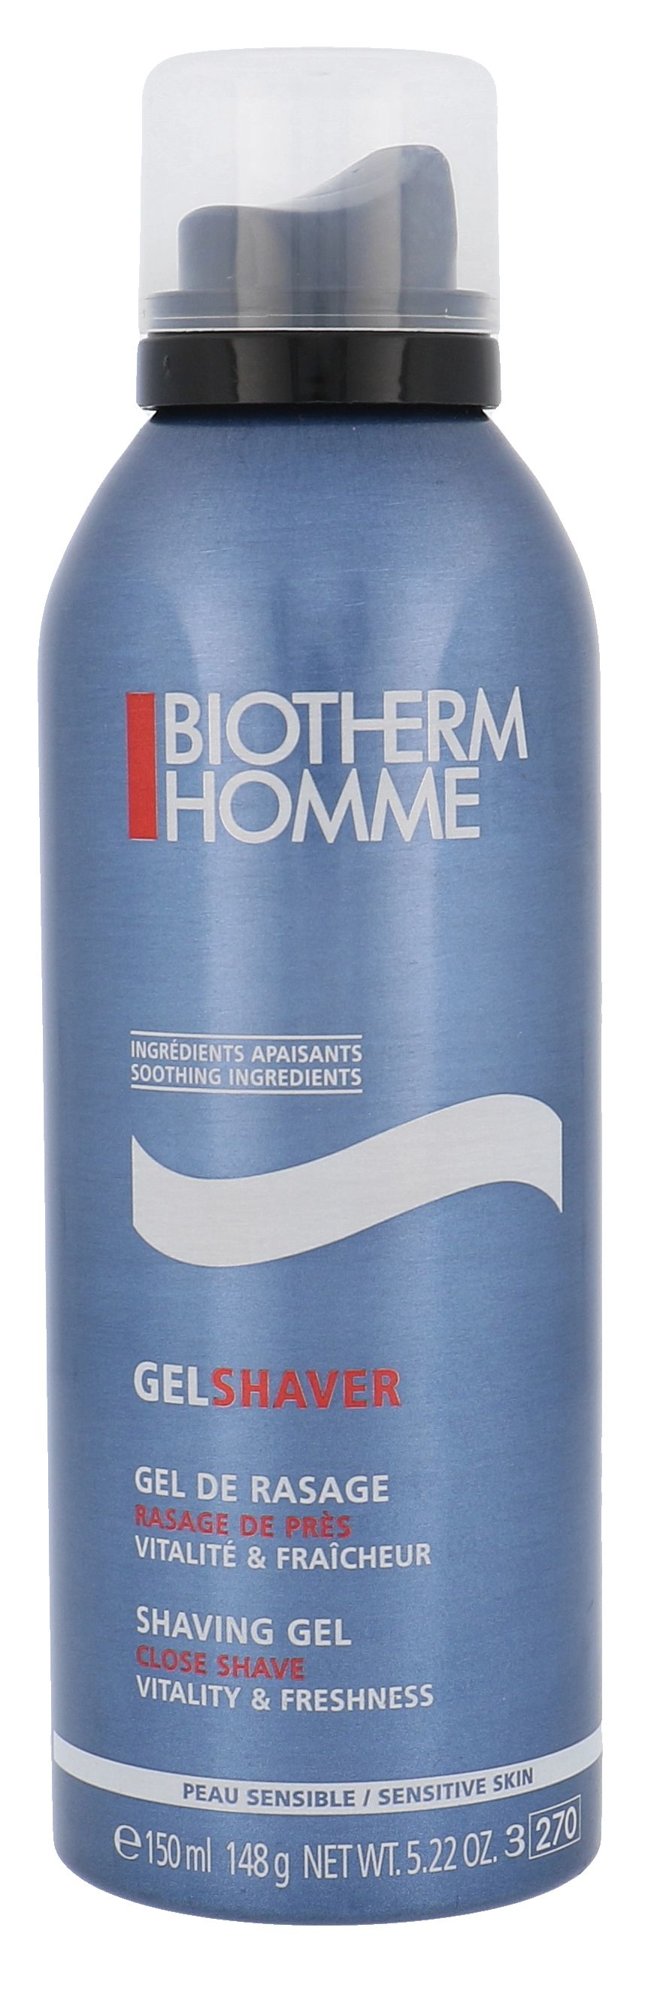 Biotherm Homme Gel Shaver 150ml skutimosi gelis (Pažeista pakuotė)